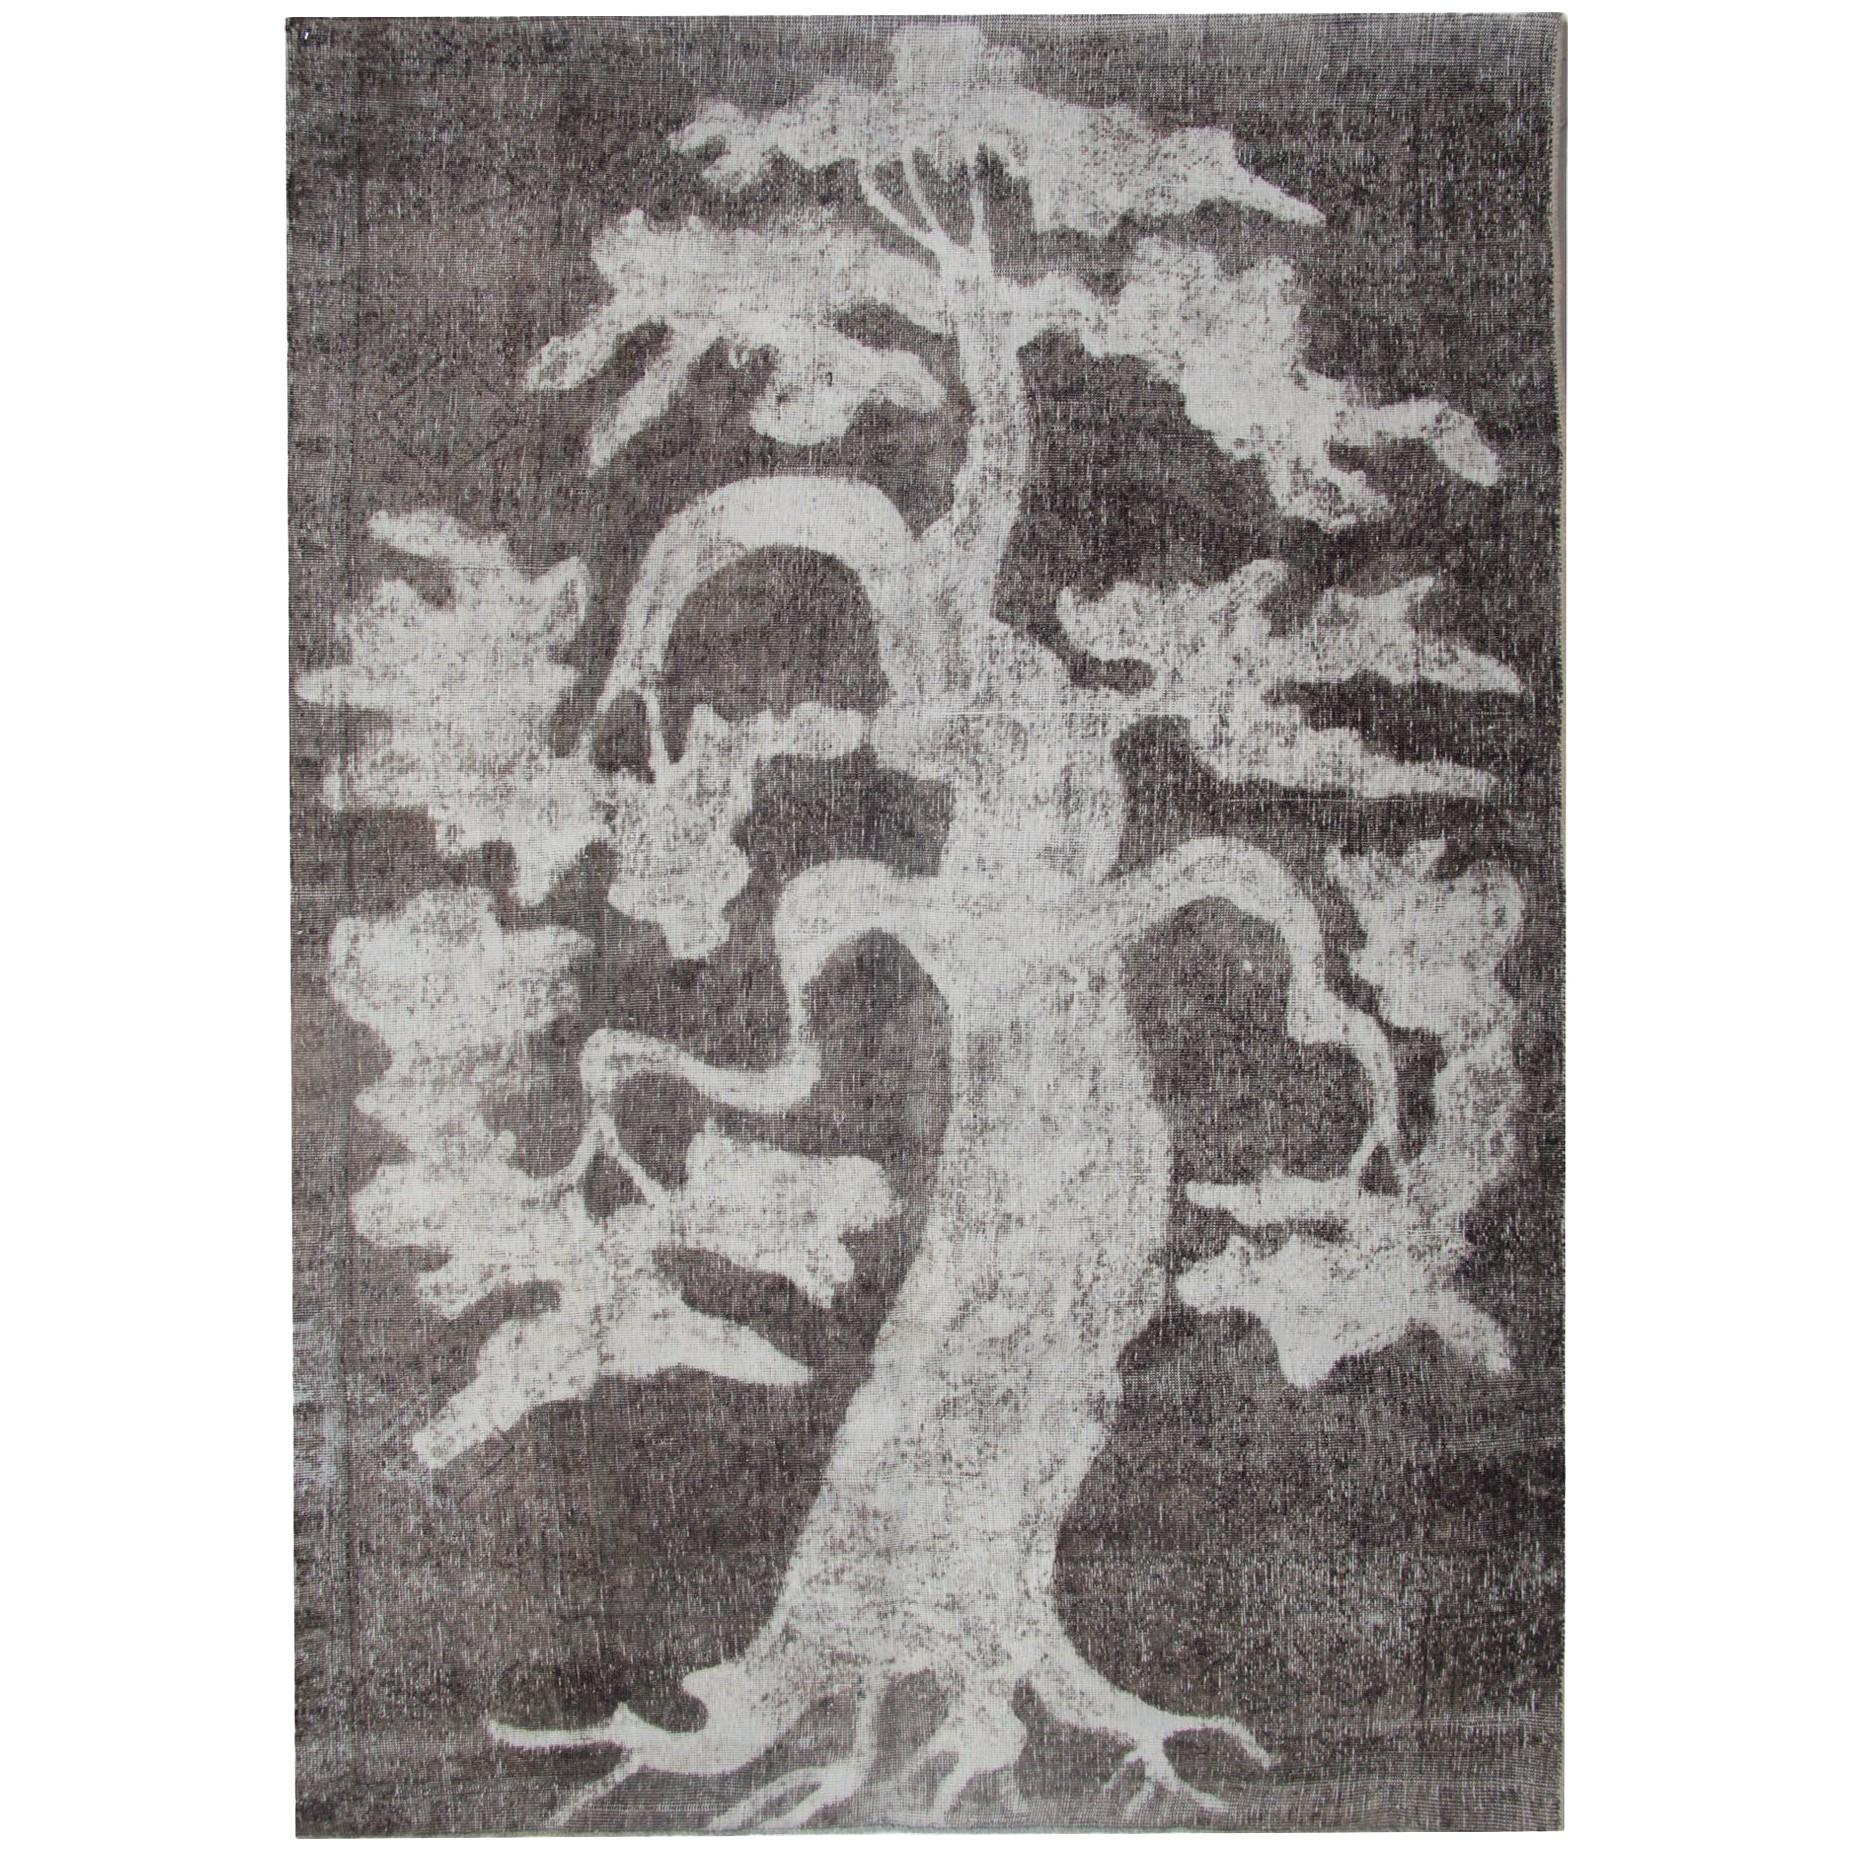 Handmade Oriental Turkish Carpets, Vintage Grey Tree, Black and White Area Rug